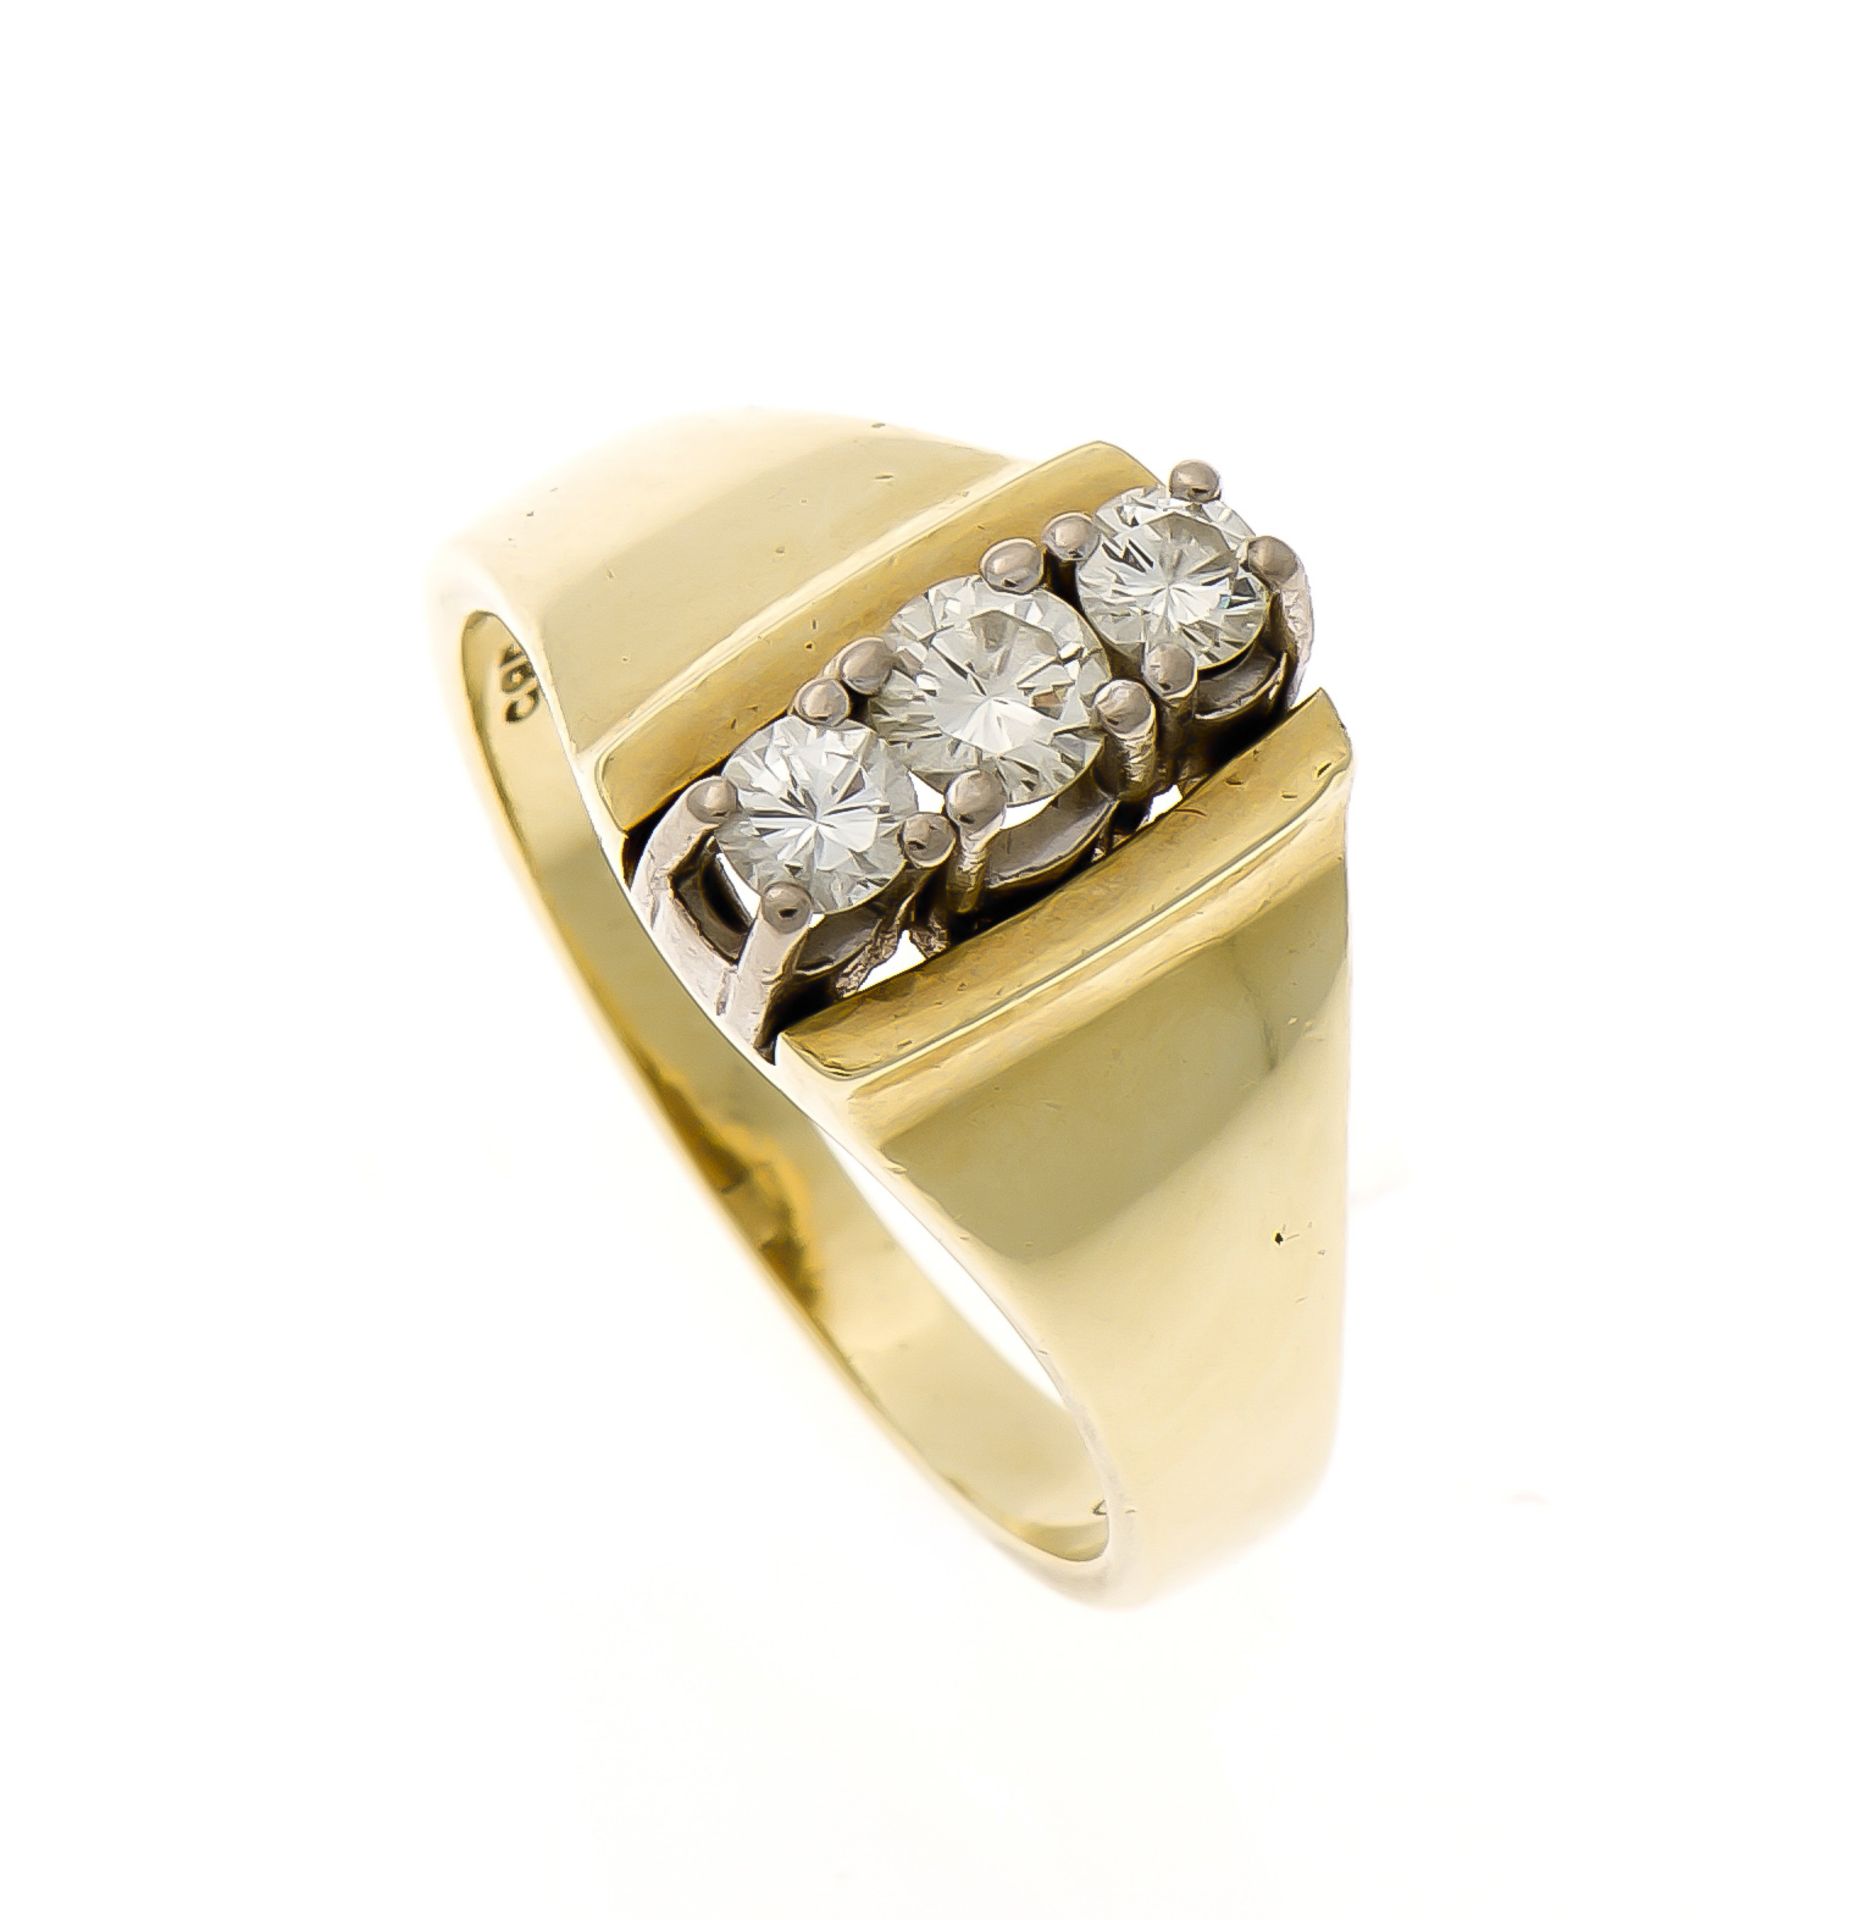 Brillant-Ring GG/WG 585/000 mit 3 Brillanten, zus. 0,42 ct W/SI, RG 54, 5,9 gMindestpreis: 180 EUR